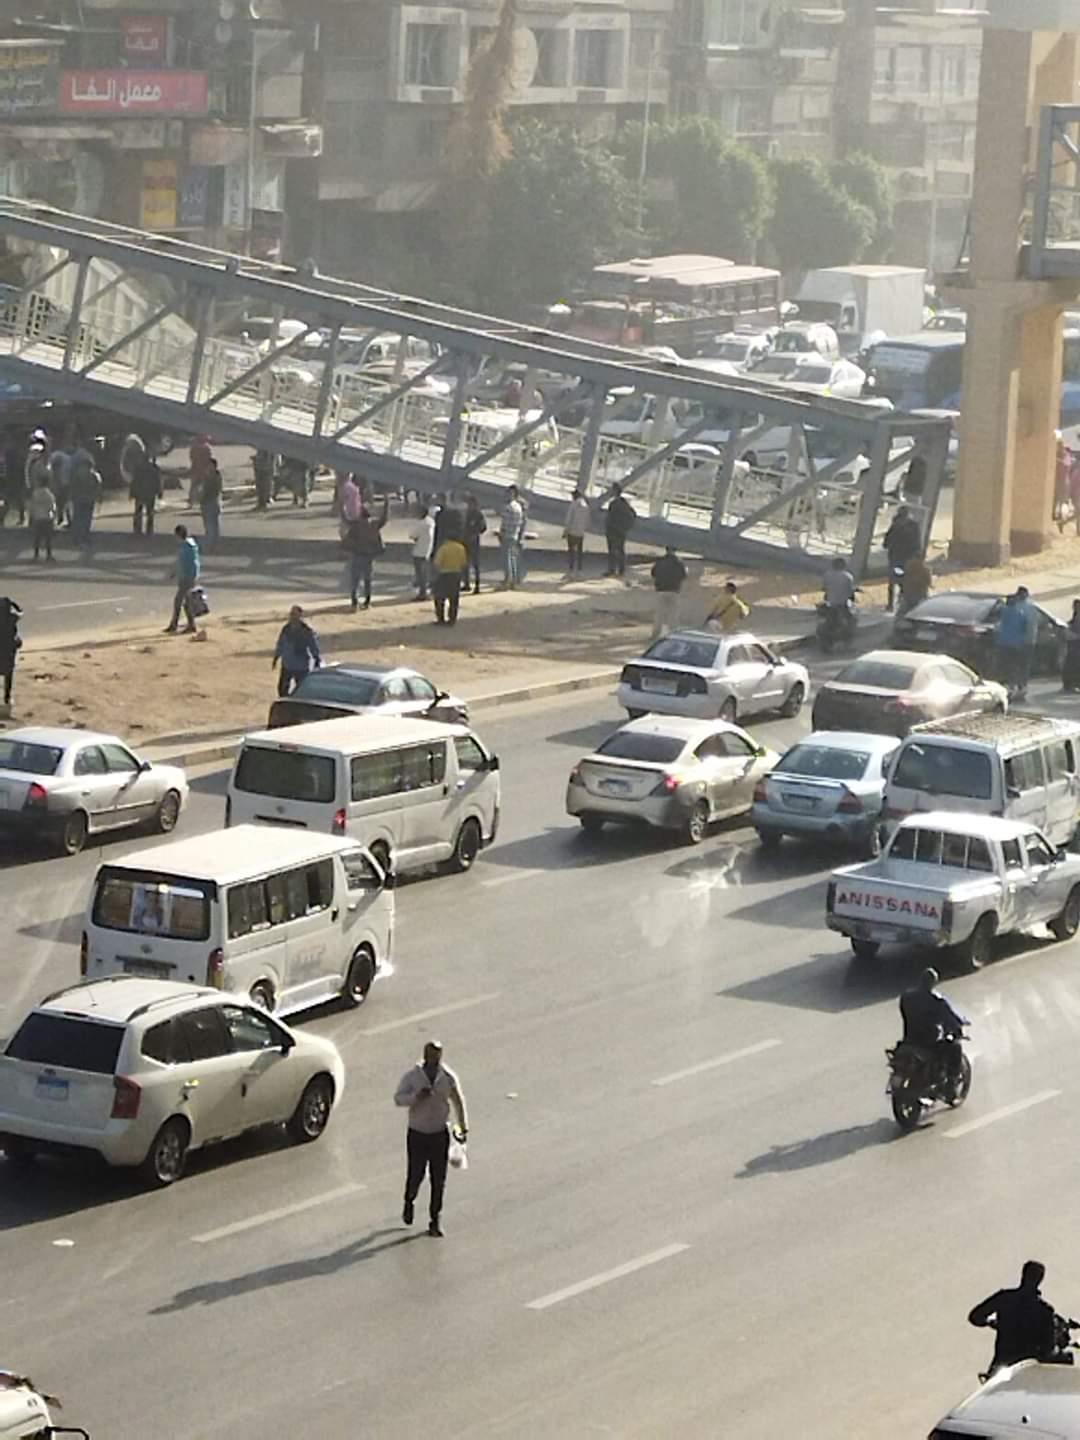 بالتفاصيل والصور سقوط كوبري مشاة في شارع أحمد عرابي بالجيزة